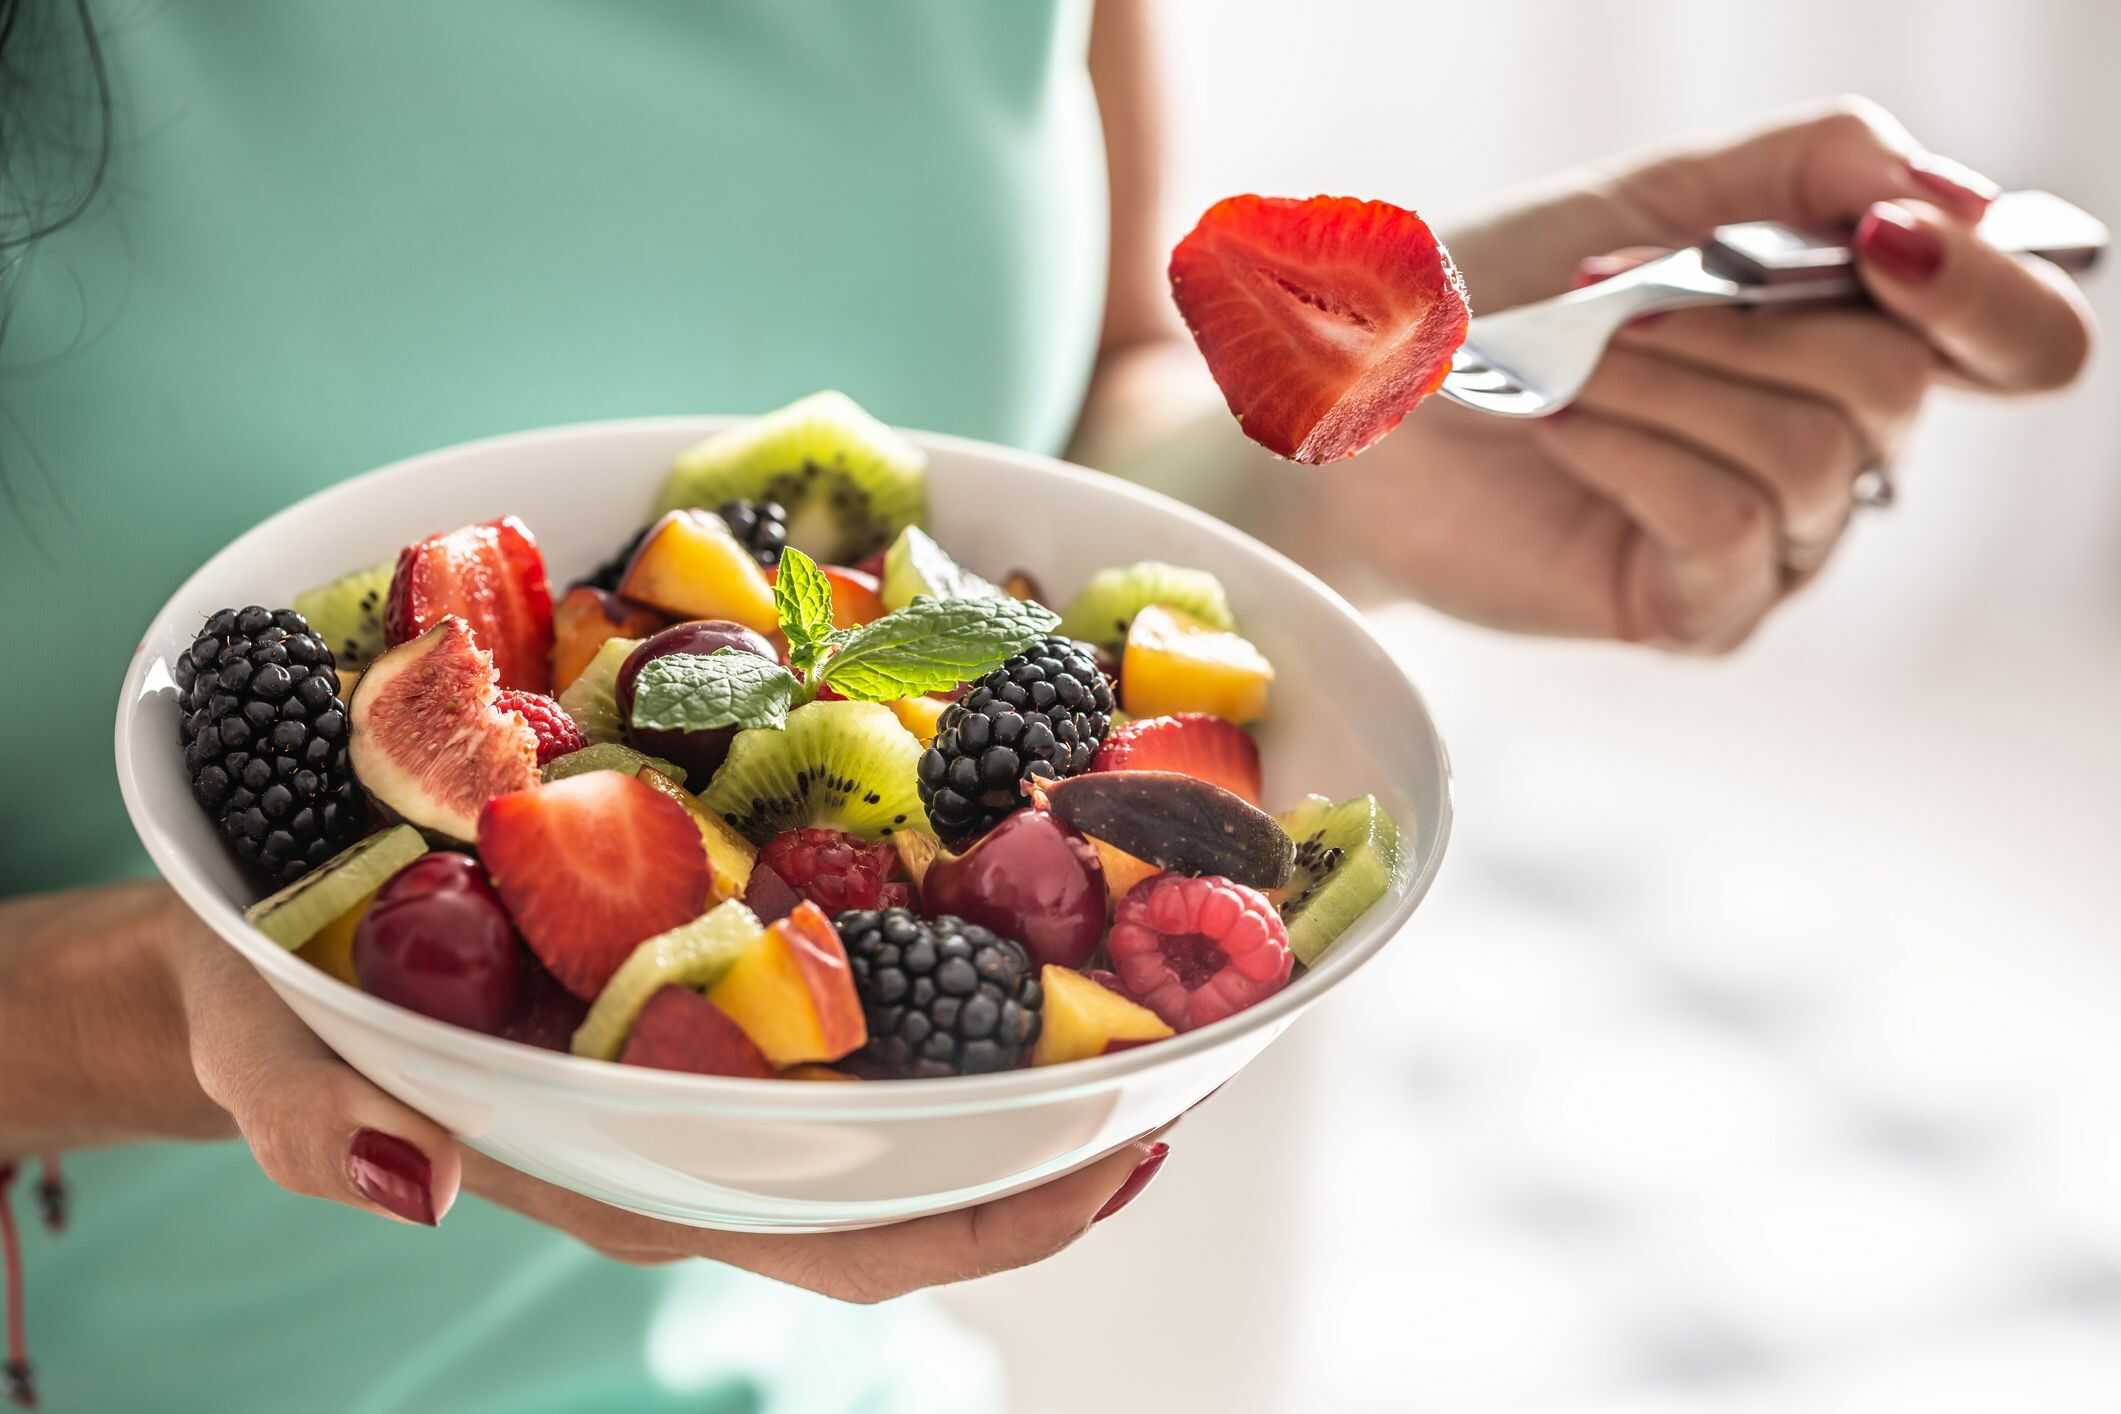 Thực đơn giảm cân bằng trái cây trong 7 ngày giúp giảm cân hiệu quả.